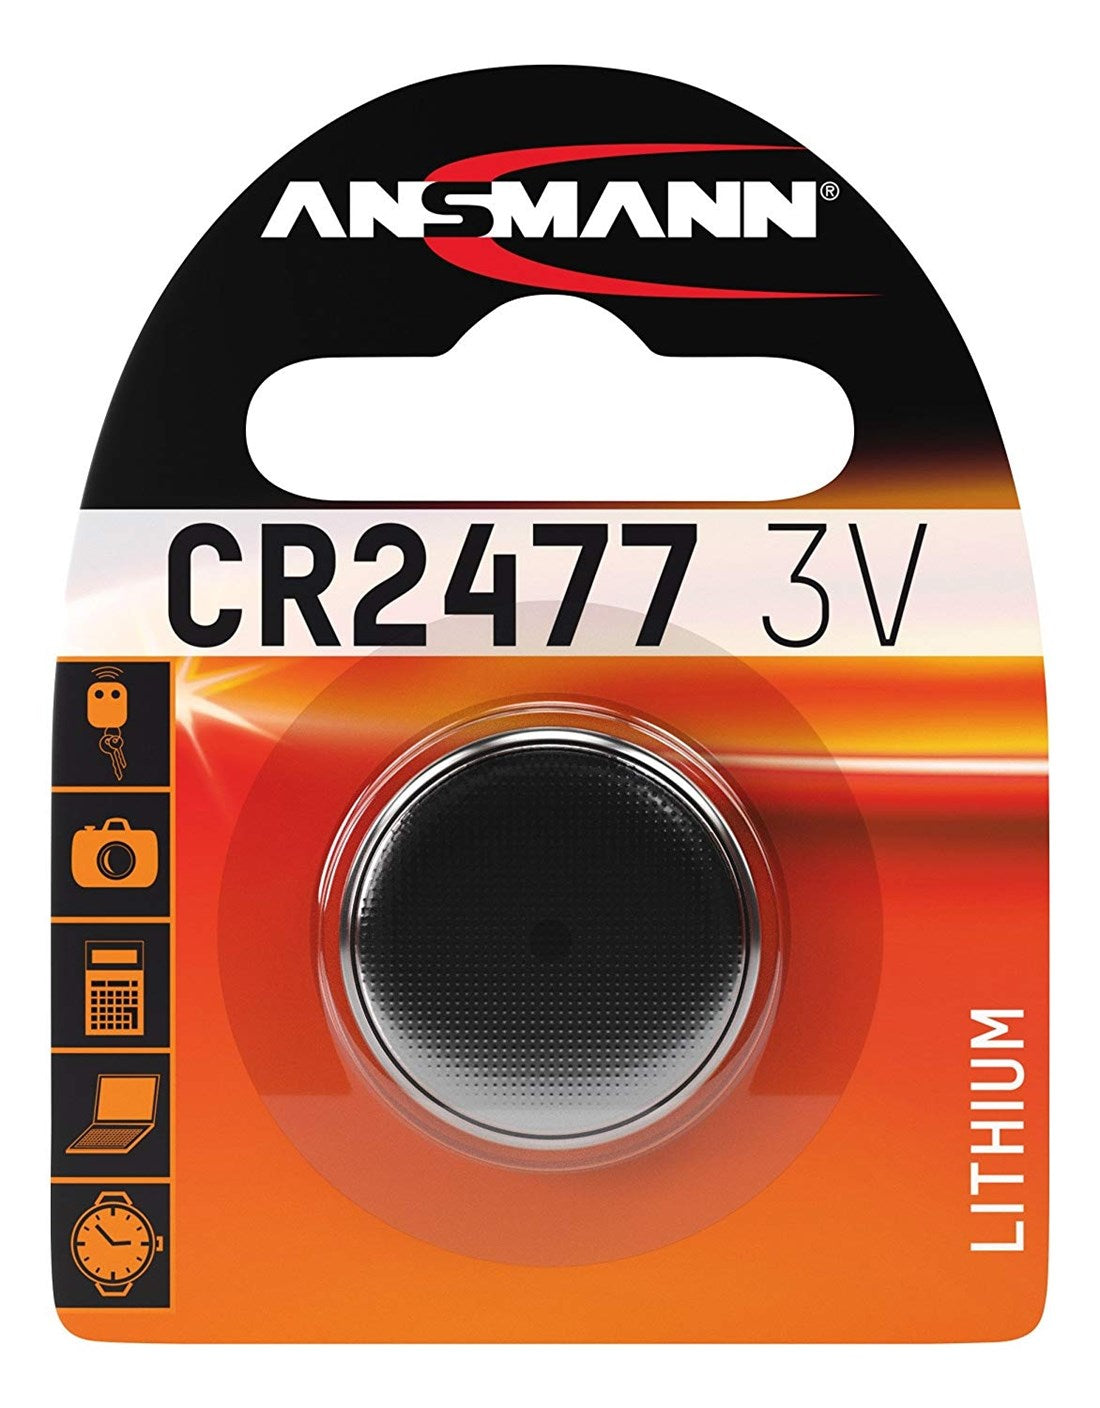 1516-0010  Ansmann Button Cell Battery, Lithium, CR2477, 3V, 1Ah